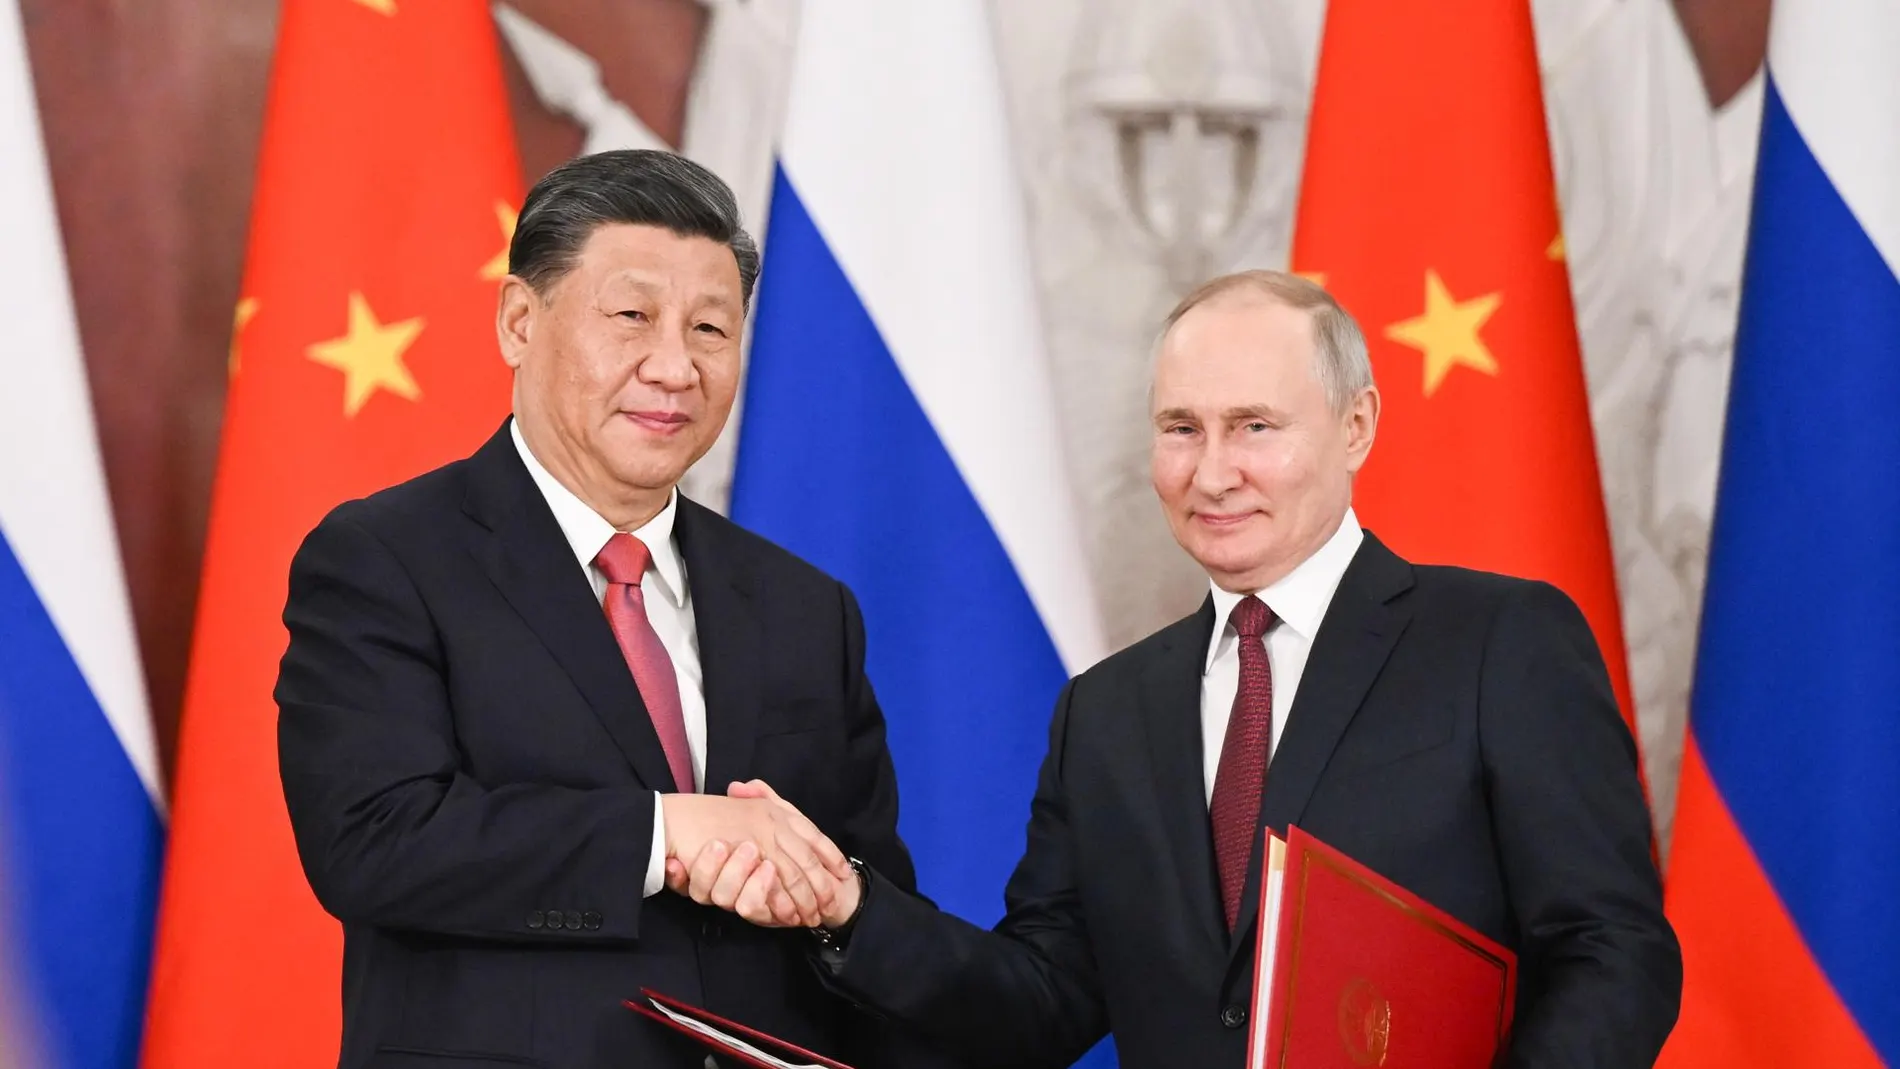 El presidente chino, Xi Jinping, y el presidente ruso, Vladimir Putin, se dan la mano tras firmar una Declaración Conjunta.